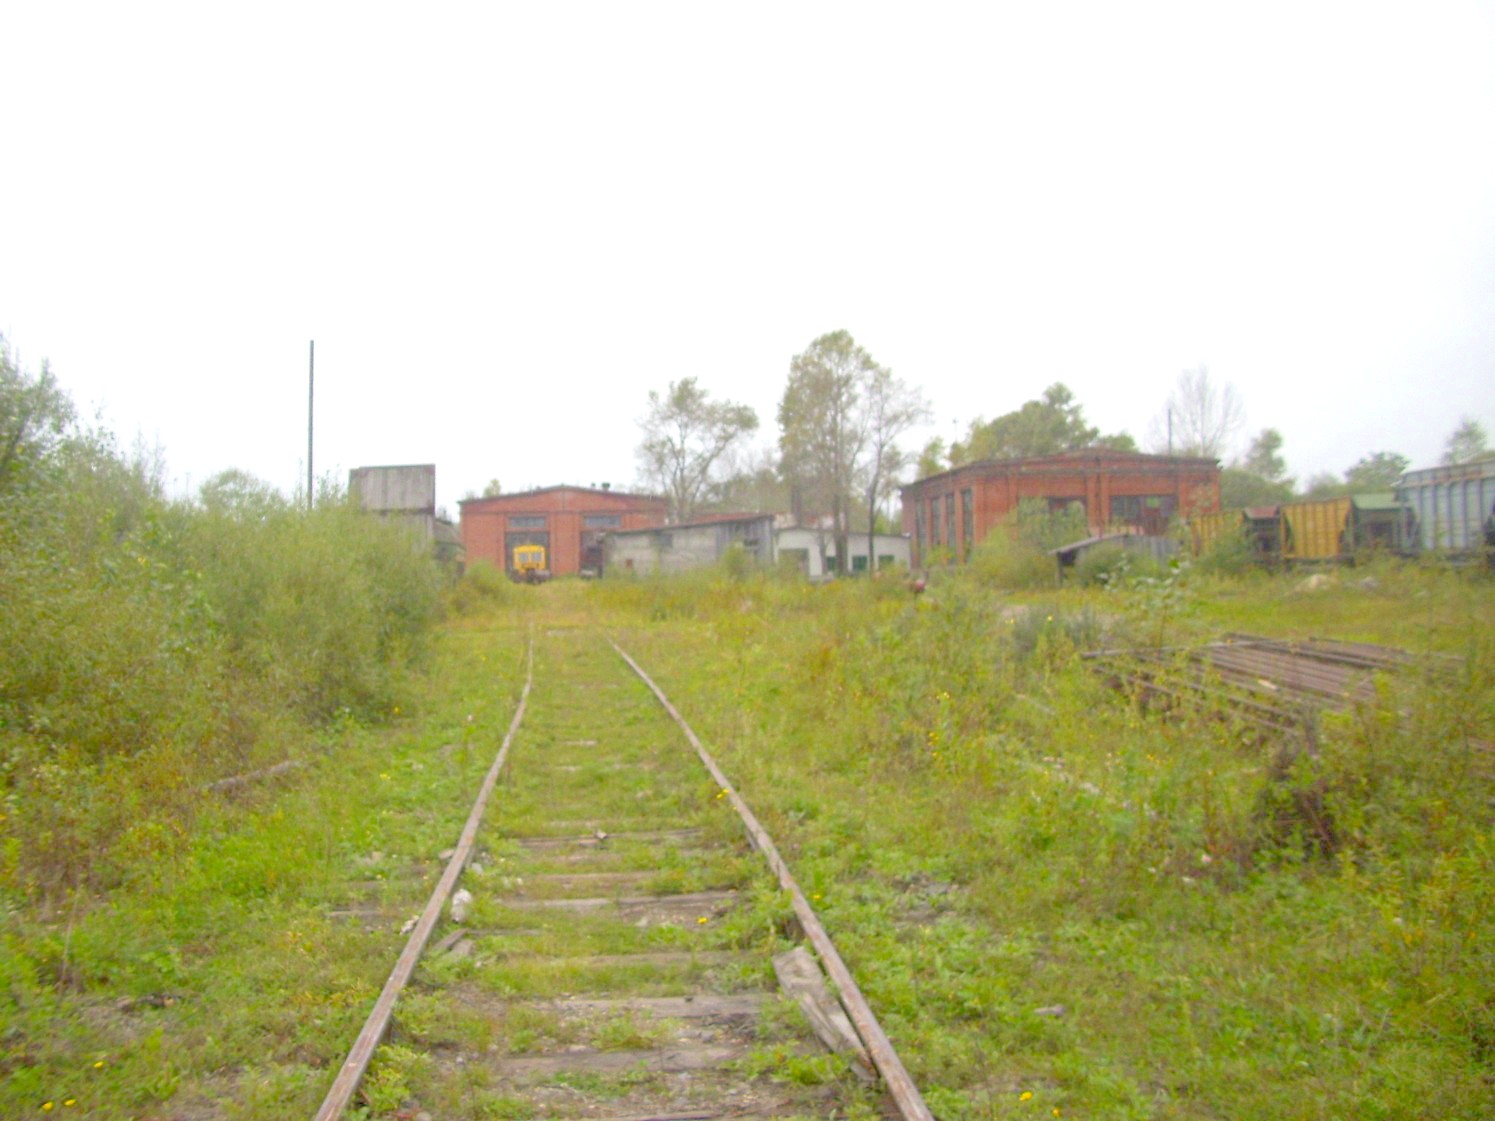 Оборская железная дорога — фотографии, сделанные в 2009 году (часть 5)